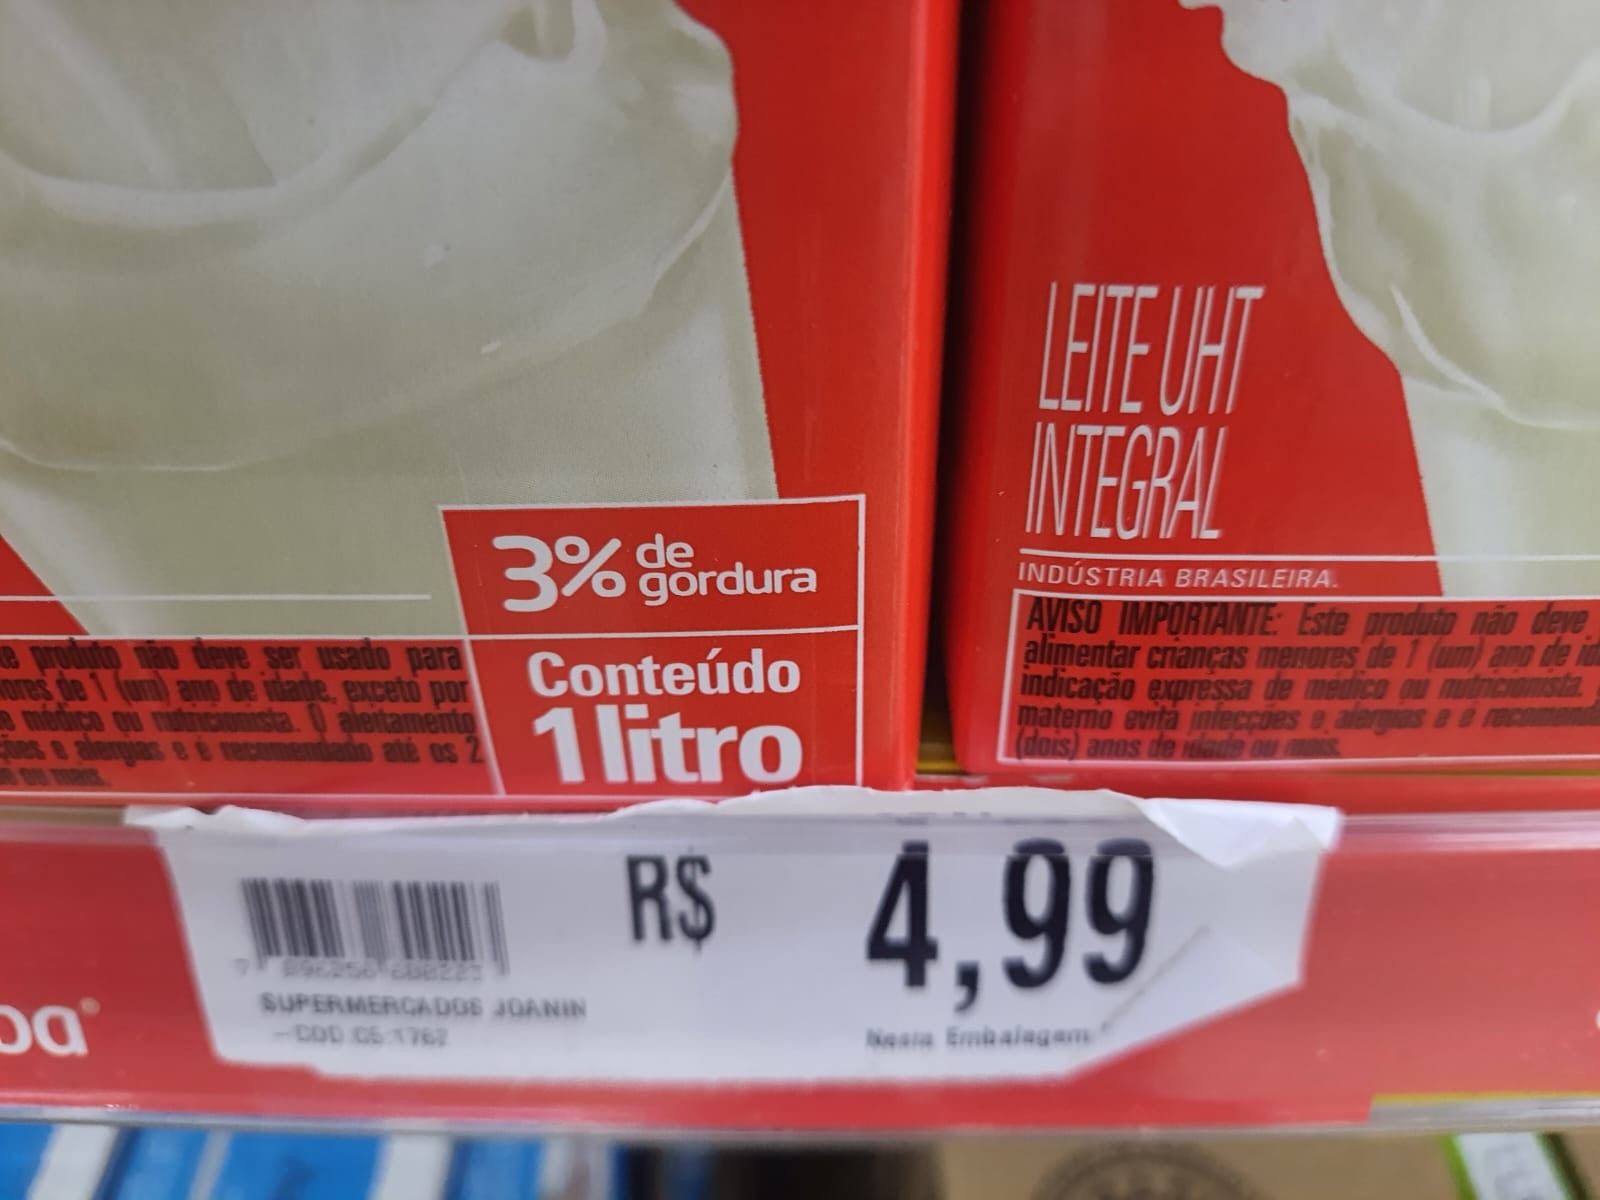 Oferta de leite em supermercado no ABC Paulista (Foto: Editora Globo)